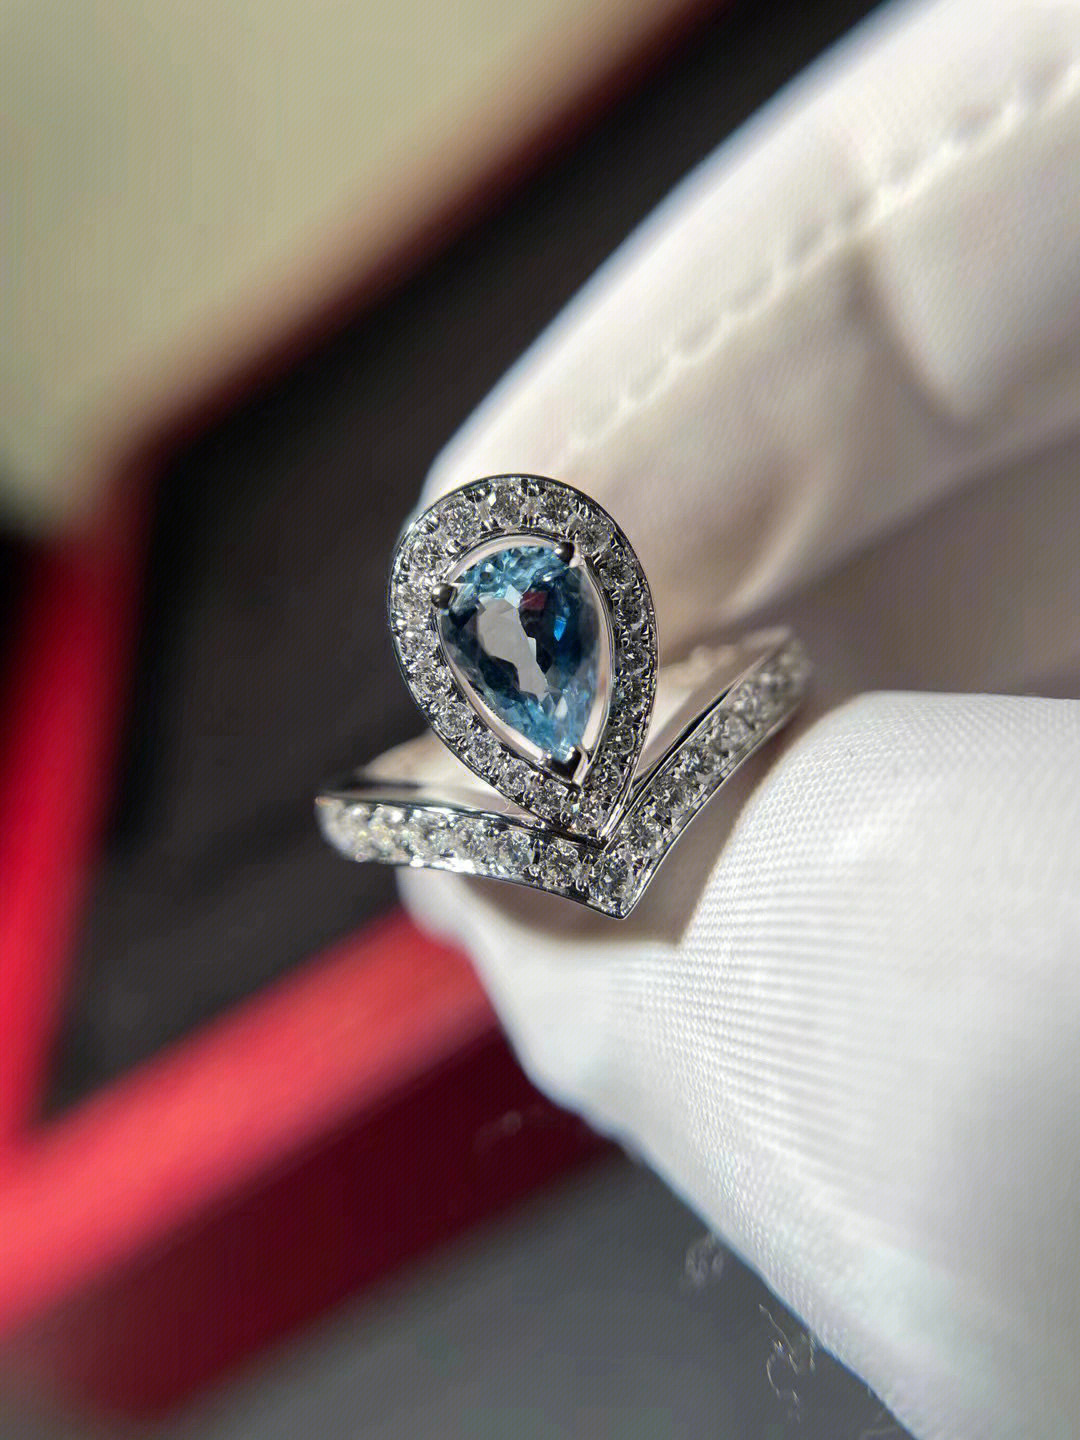 尚美巴黎蓝宝石戒指图片